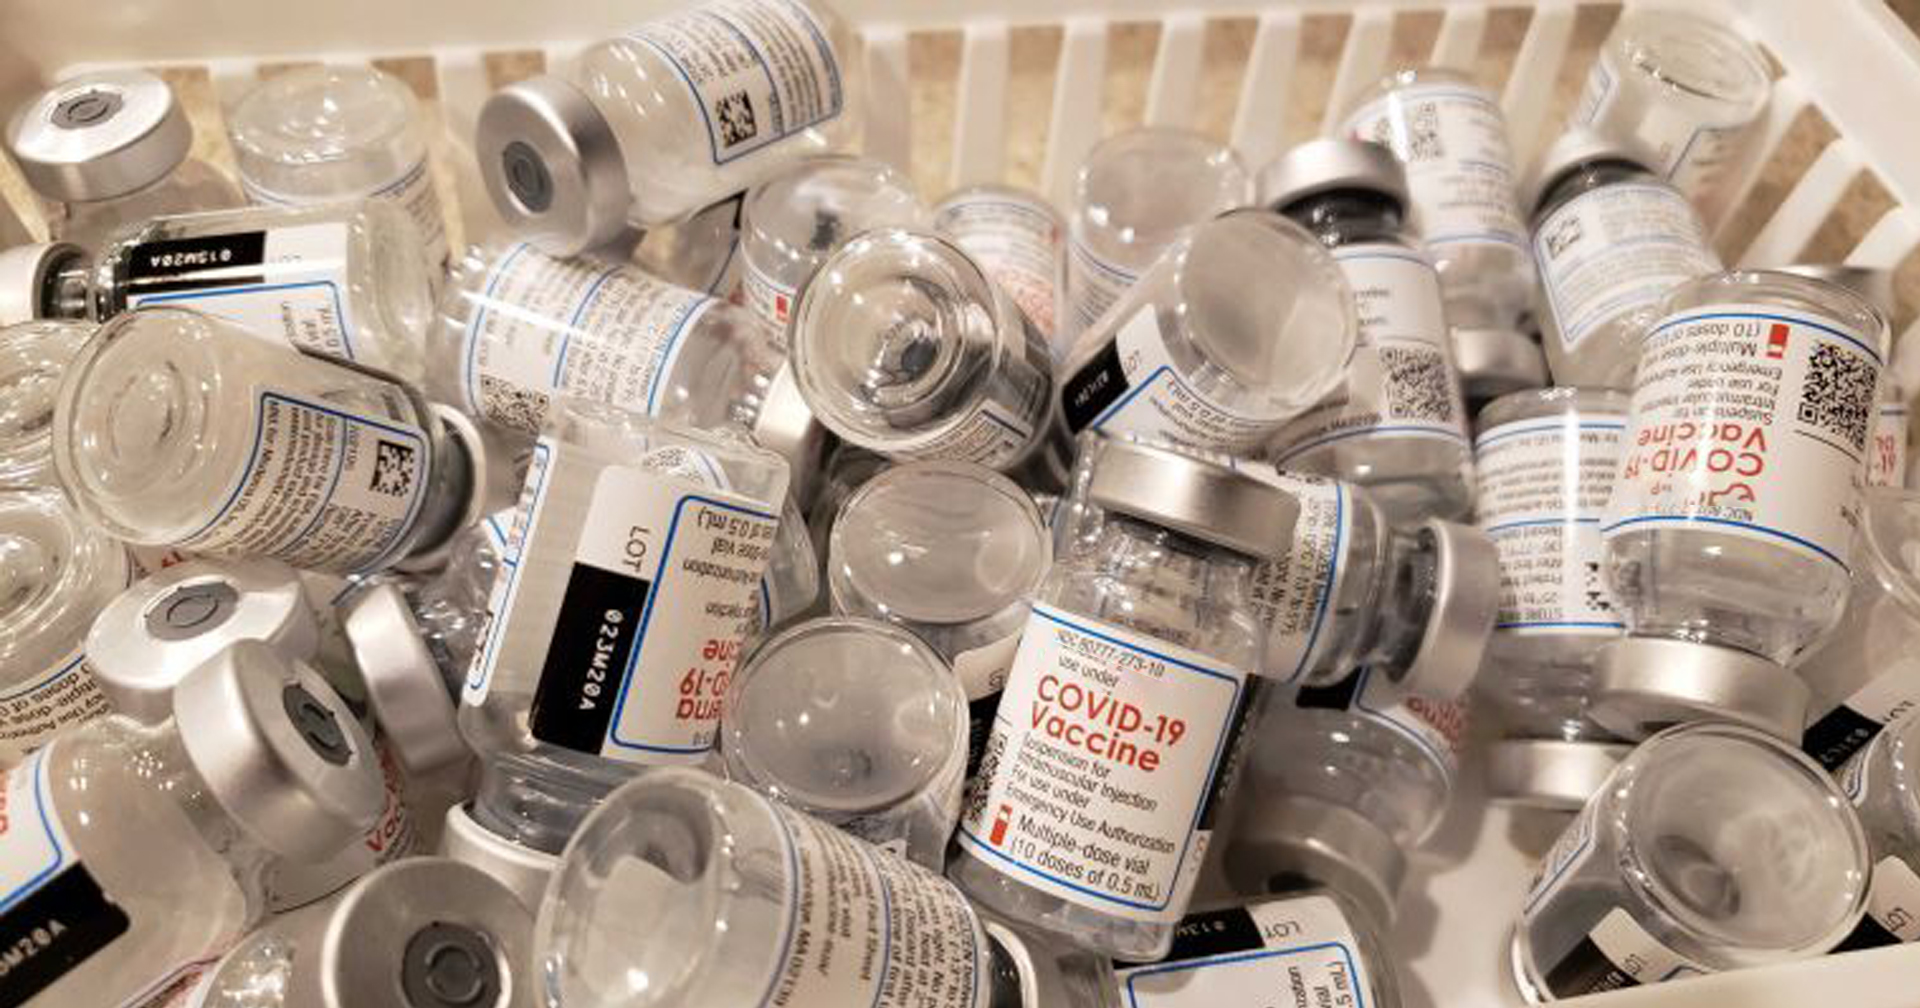 ฮ่องกงจะทิ้งวัคซีน Pfizer หลายล้านโดส เพราะใกล้หมดอายุ แถมคนก็มาลงทะเบียนน้อย